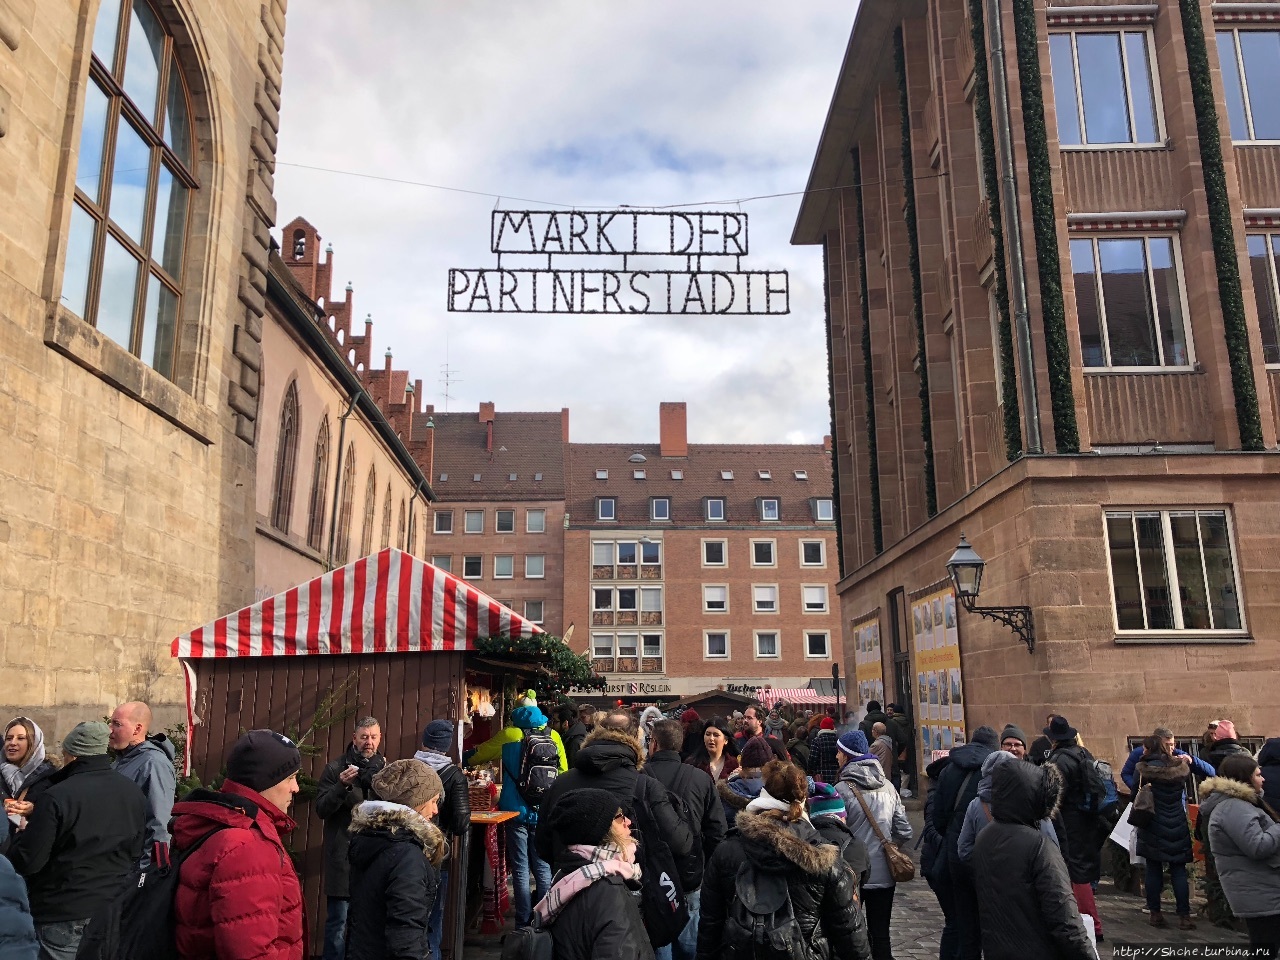 Рынок городов-побратимов / Markt der Partnerstadth